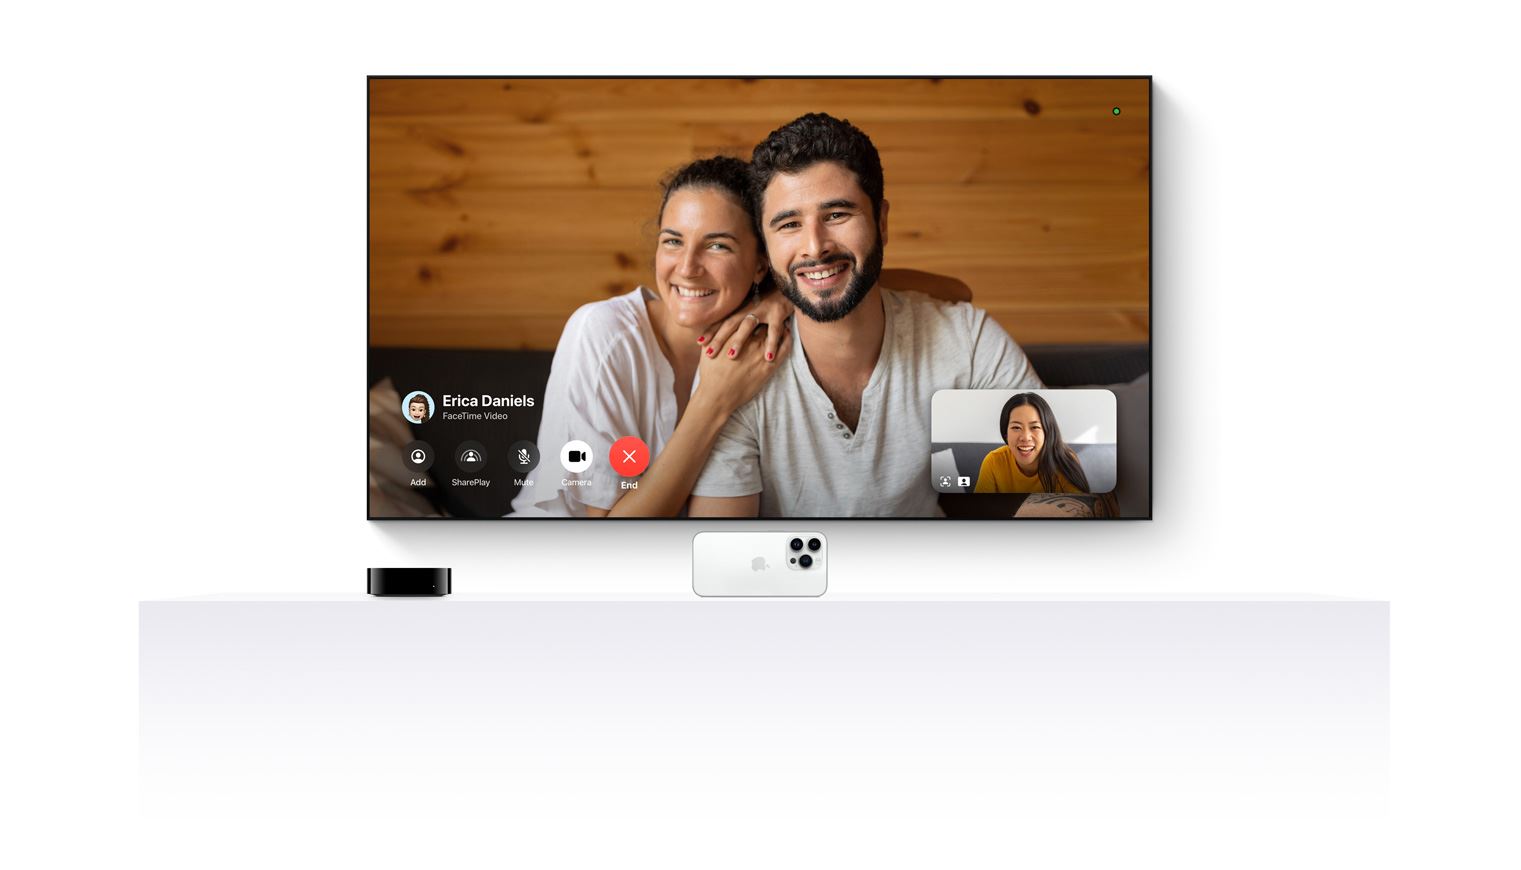 戦国 カグラ スロット TV 4k and an iPhone working together to bring FaceTime to a flat screen television